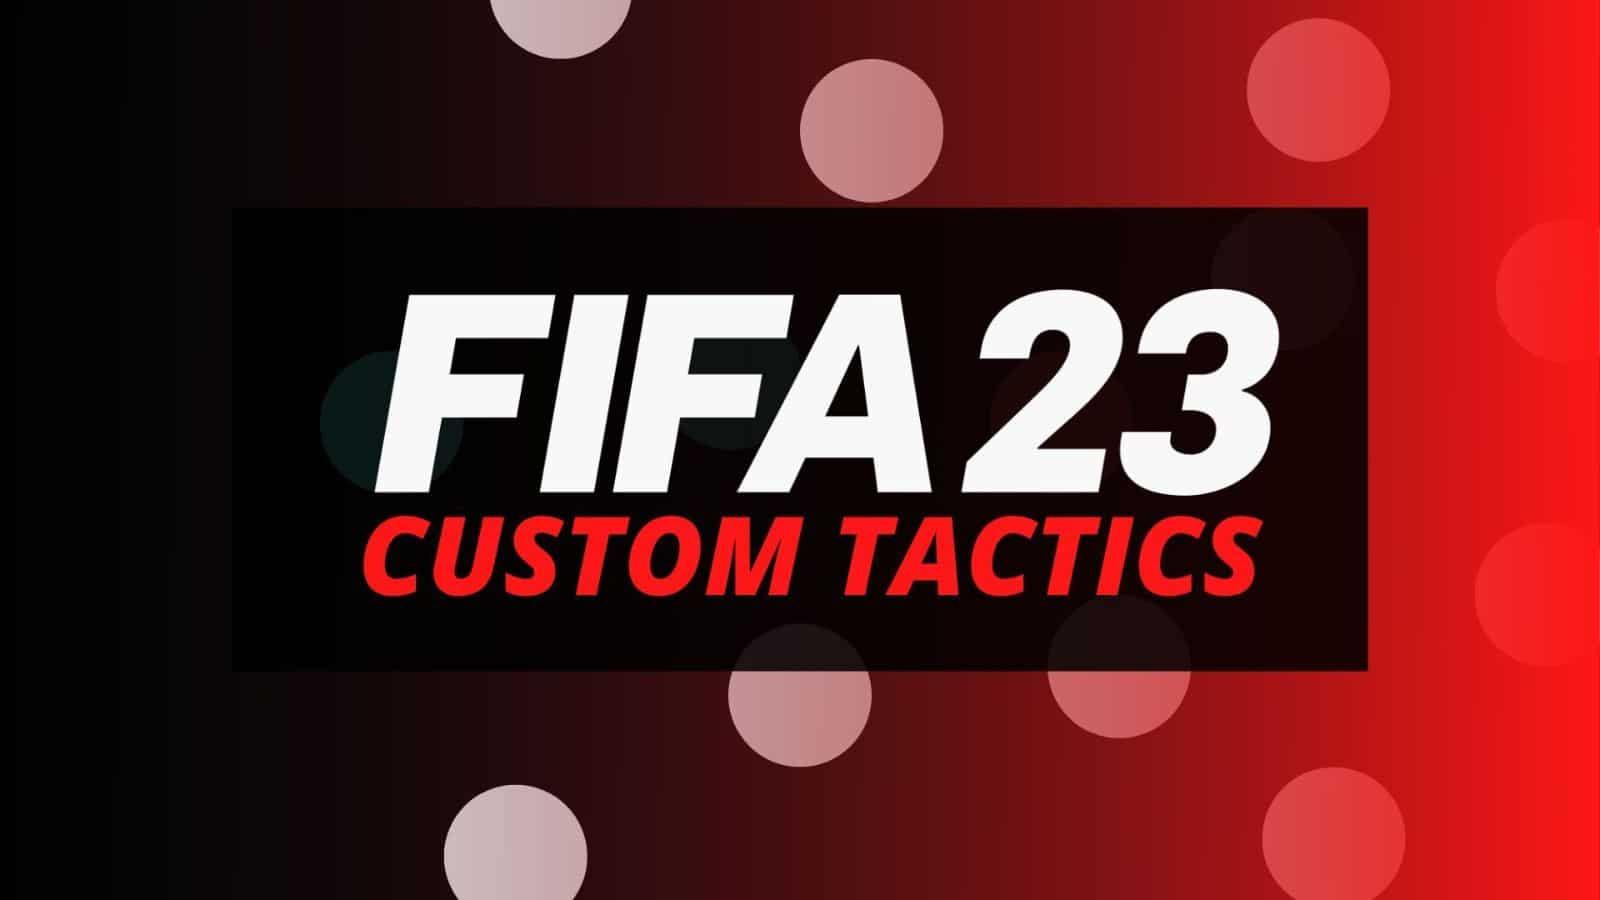 FIFA 23 custom tactics